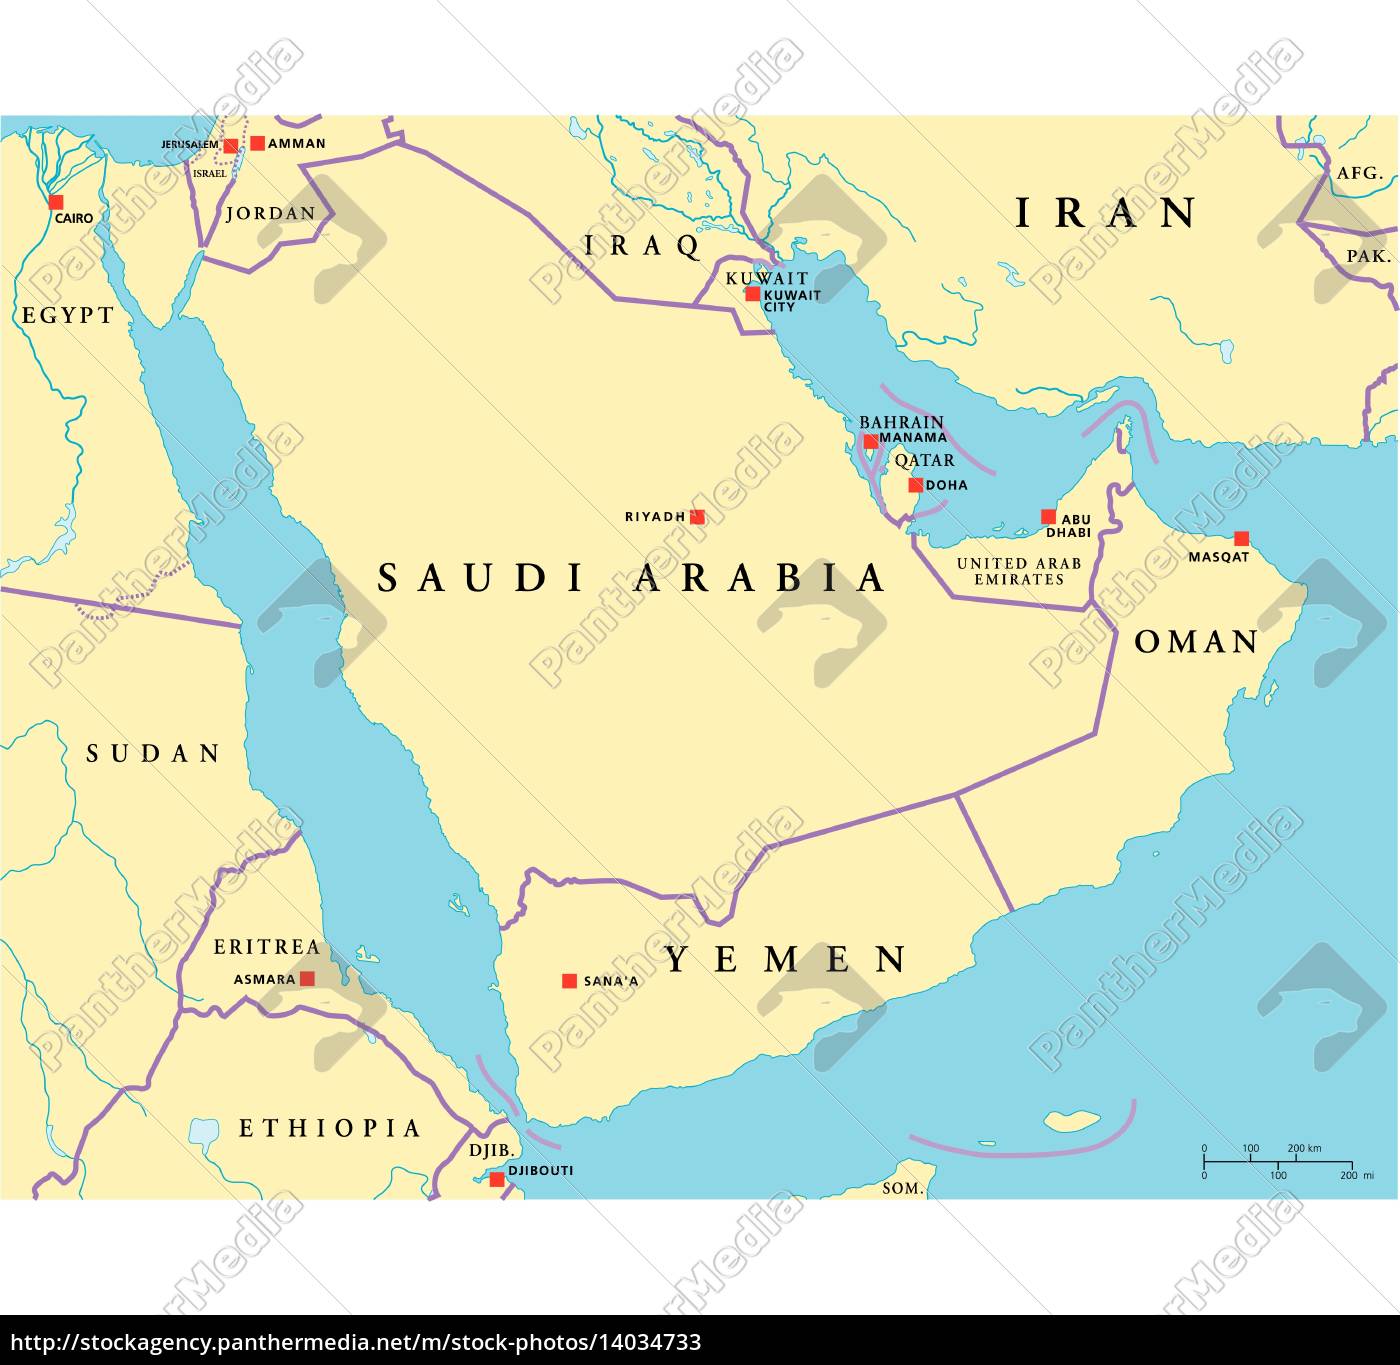 mapa político da península arábica - Fotos de arquivo #14034733 | Banco